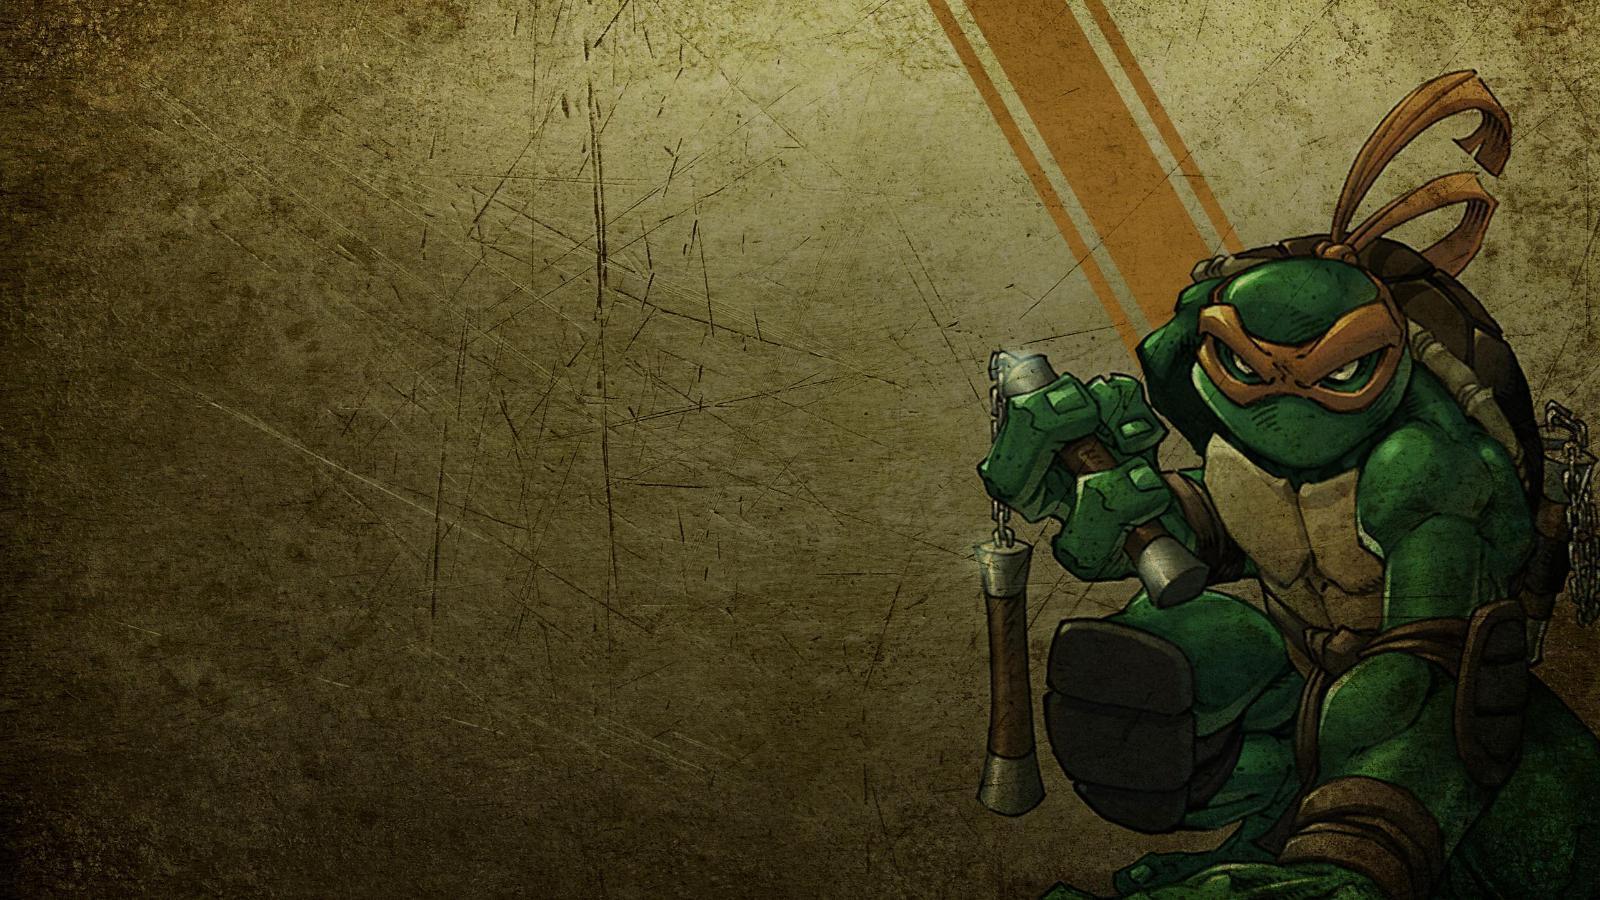 Michelangelo Widescreen Ninja Turtles Wallpaper